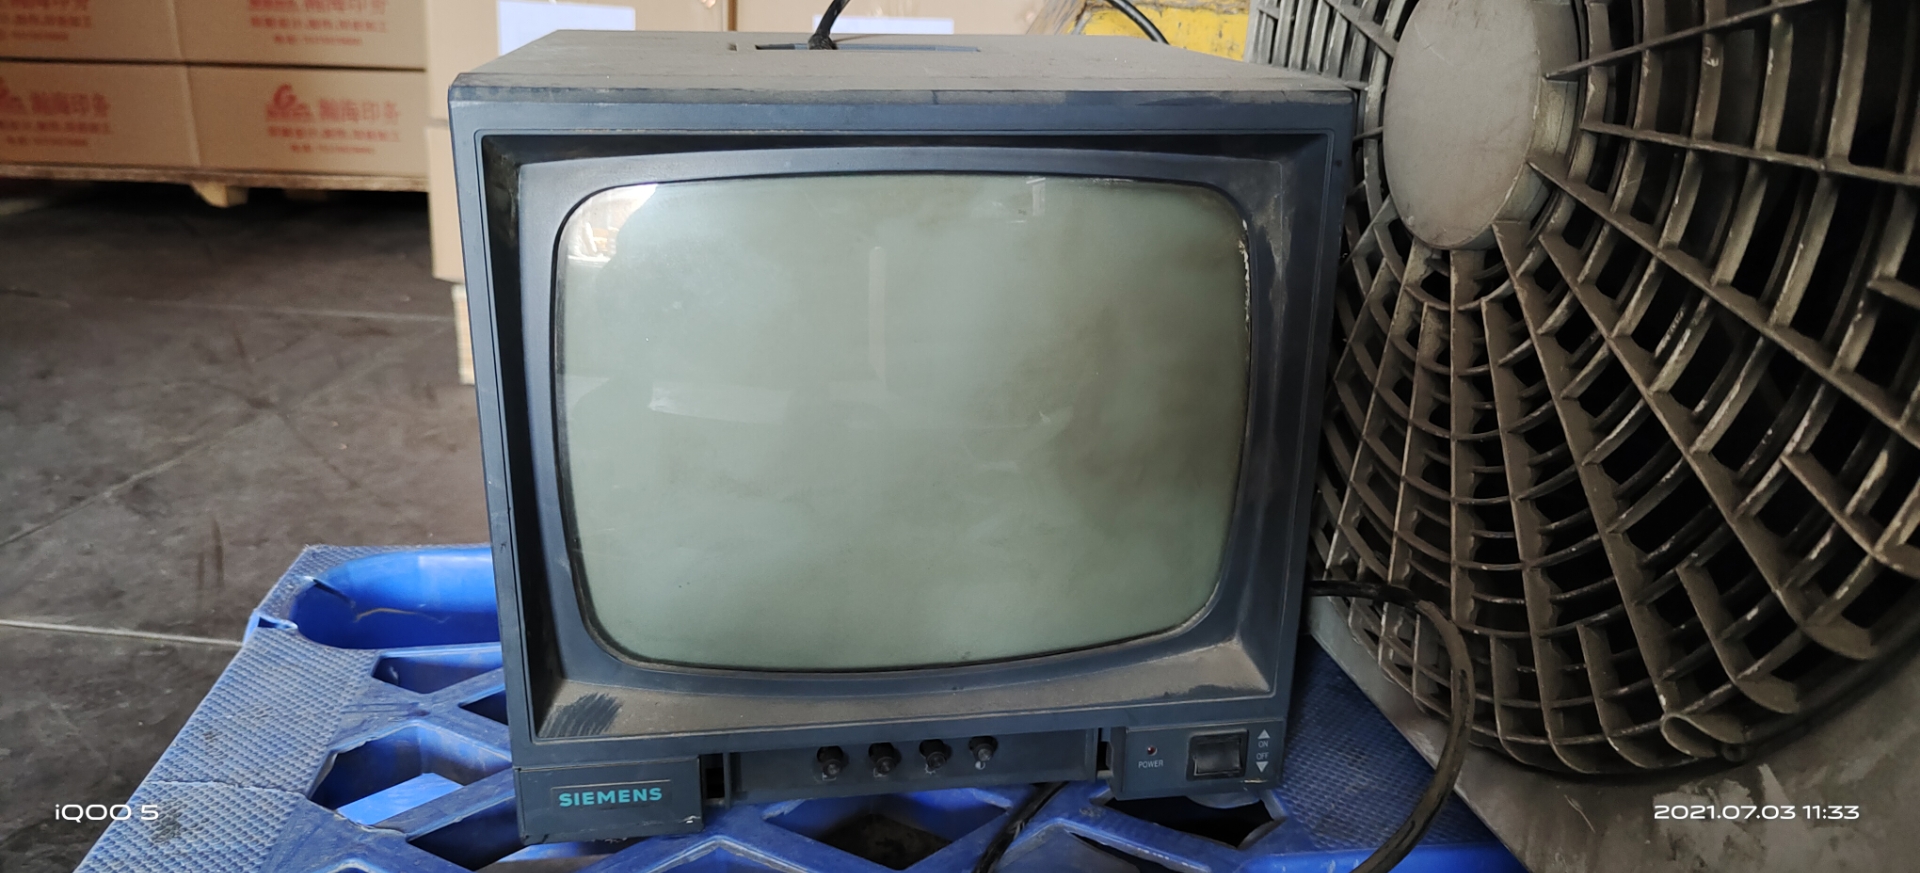 特旧版的老式电视机